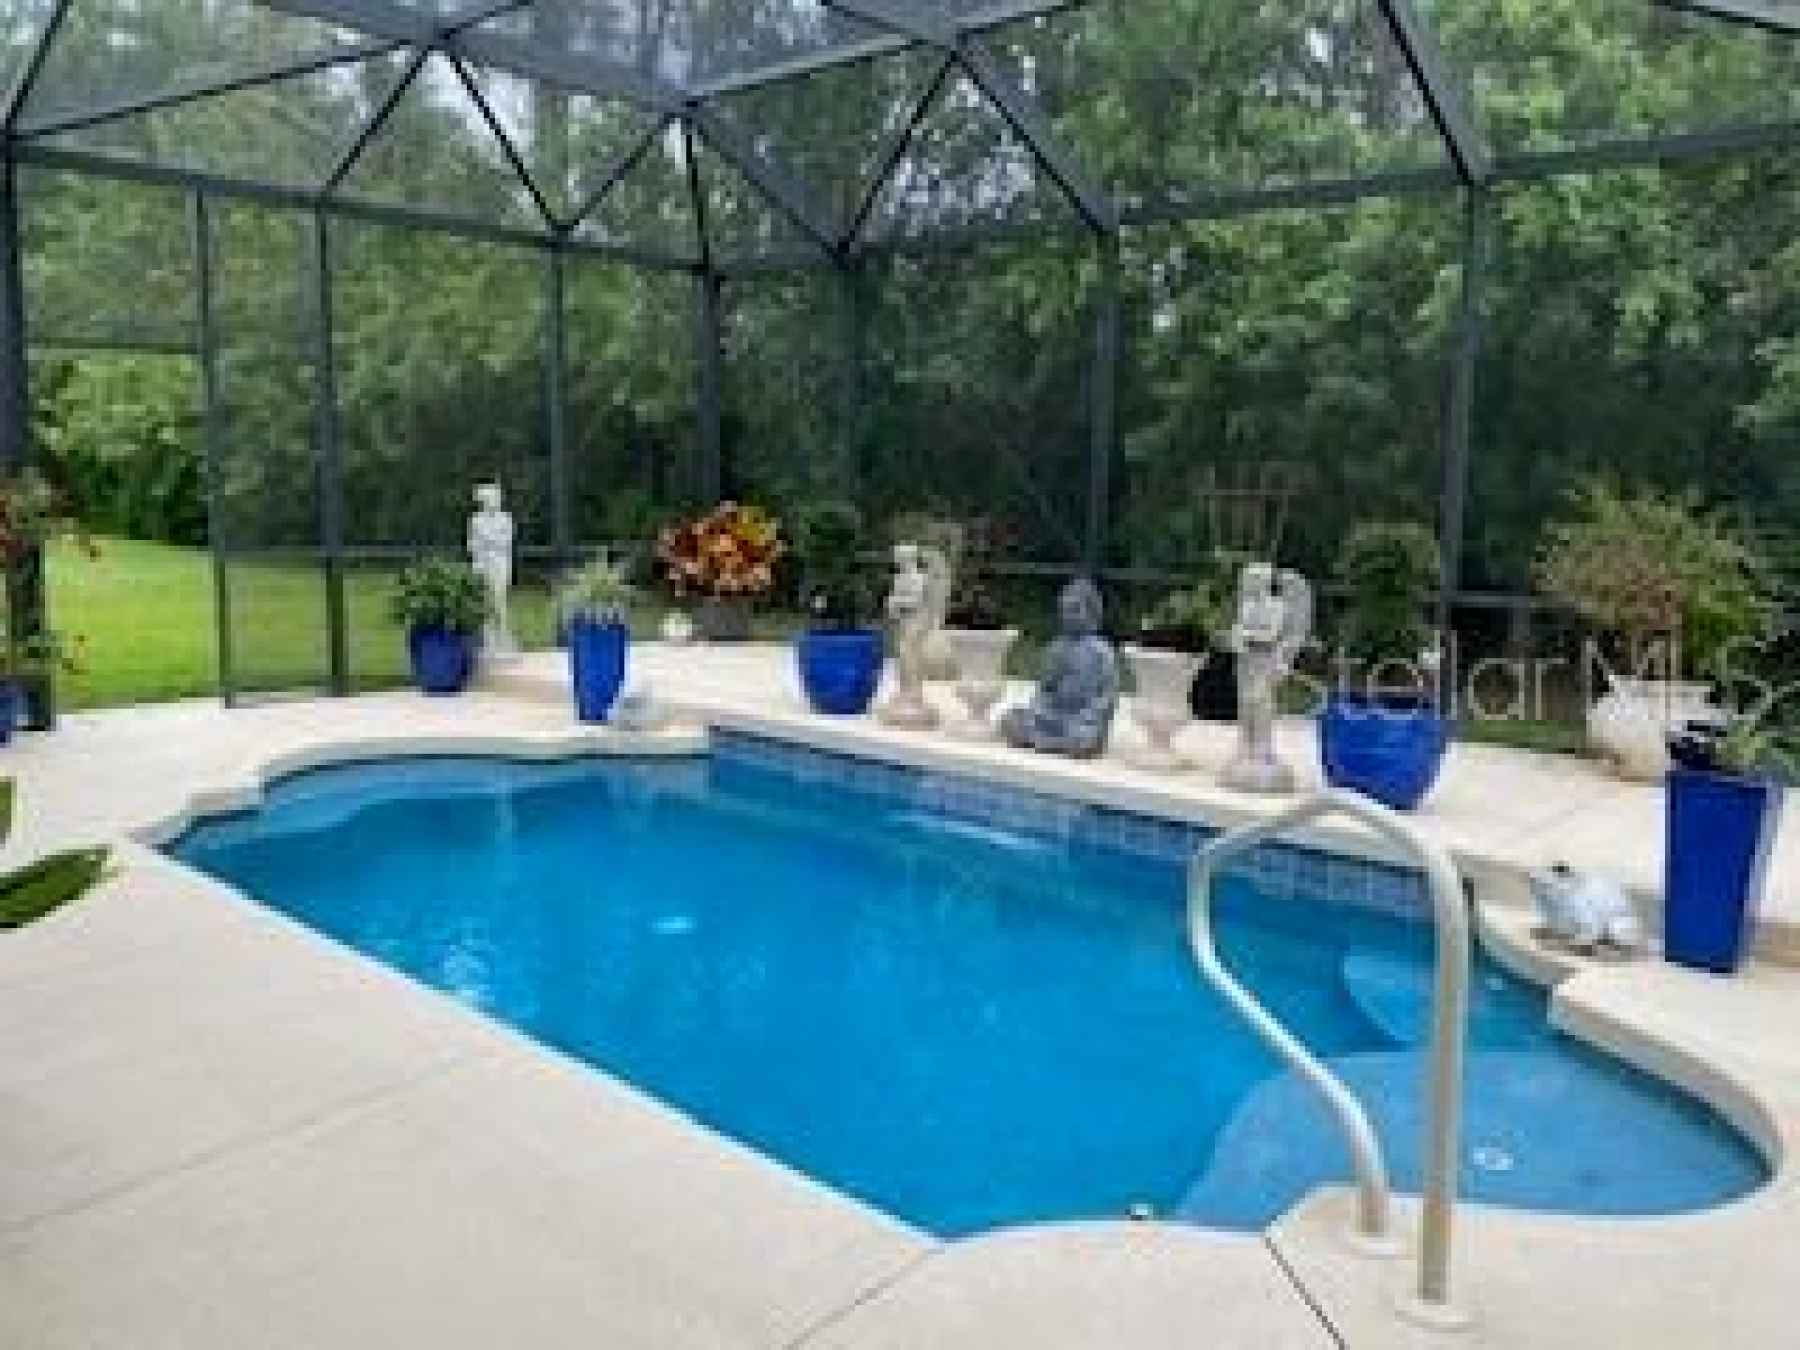 Pool/Back yard